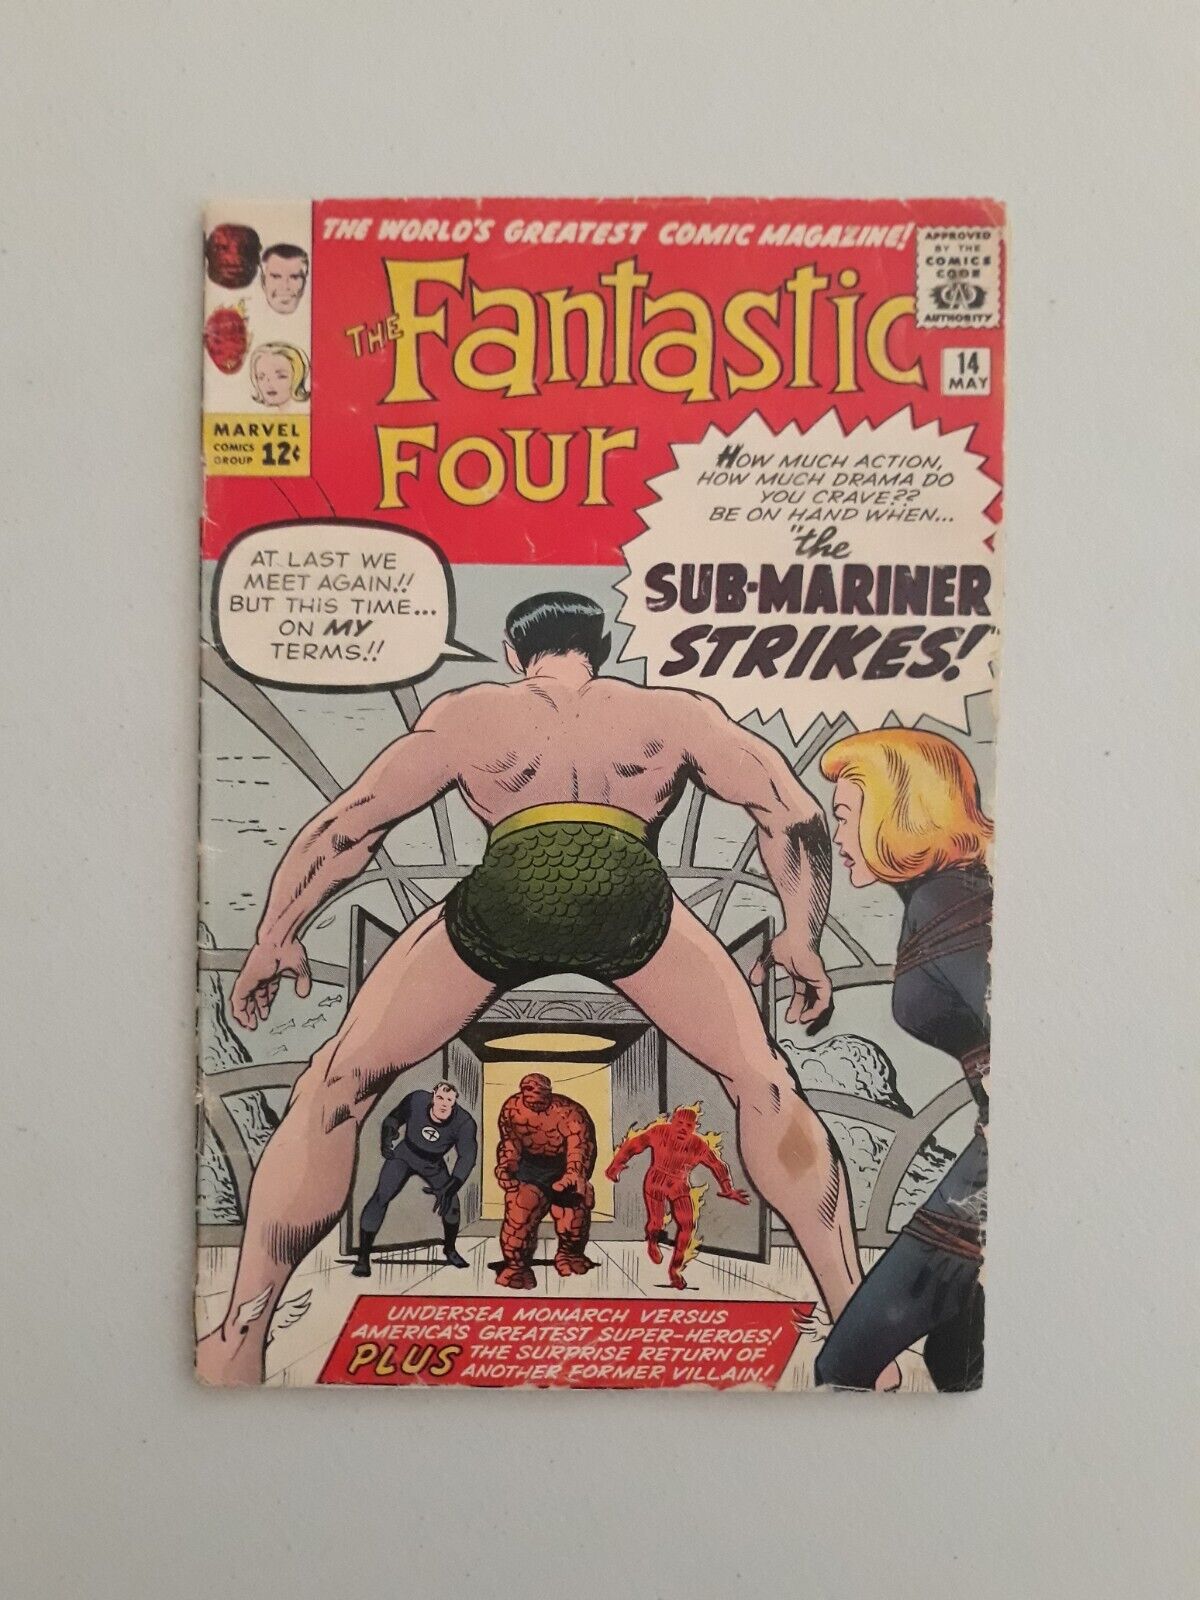 Fantastic Four 14 Submariner Marvel Comics 1963